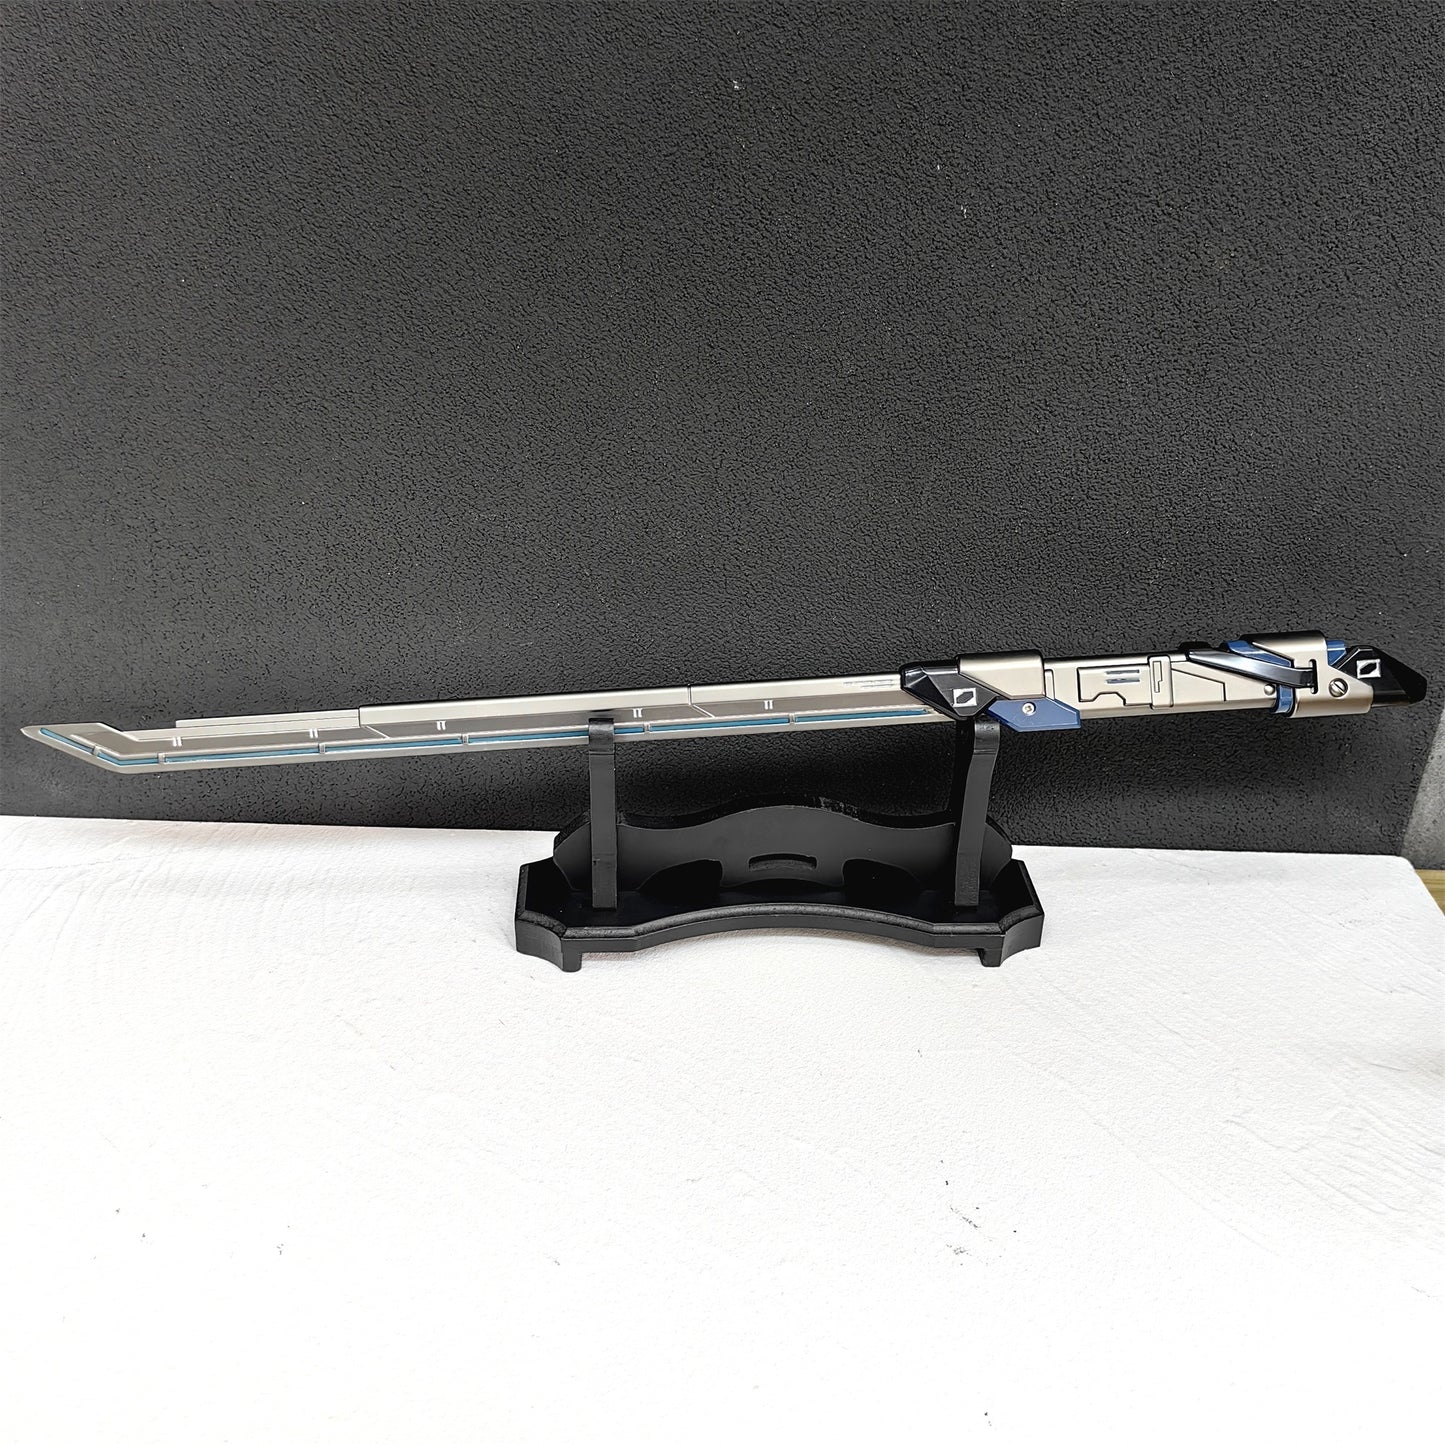 Luminous Sovereign Knife RGX Blade Reaver Dagger Jett Kunai 4 In 1 Pack